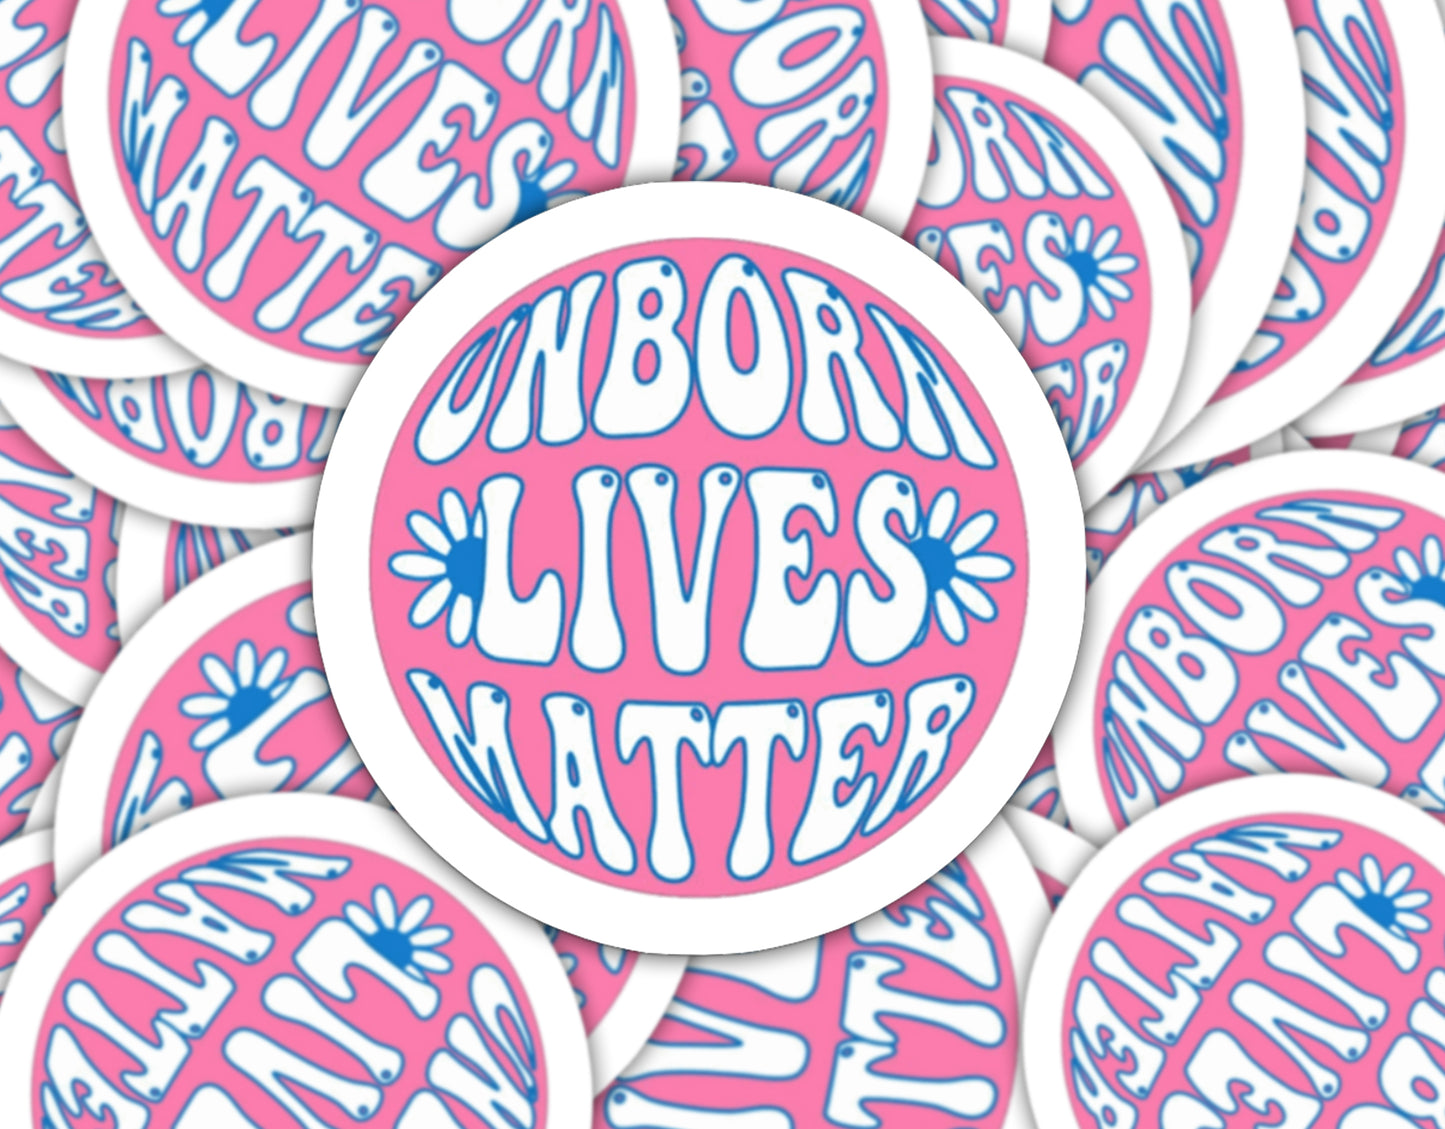 Unborn Lives Bubble Letter Sticker